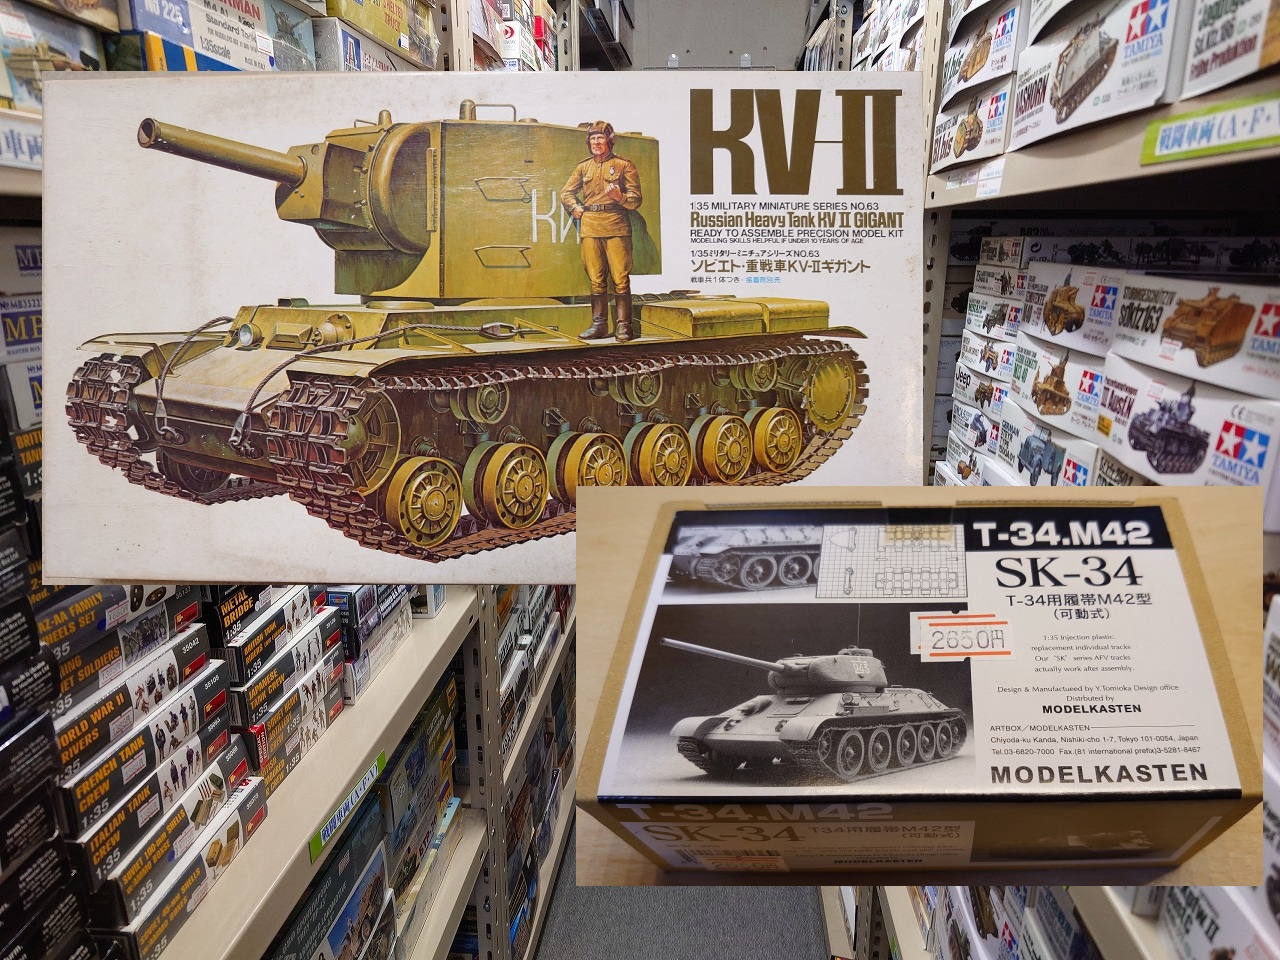 【最近購入した物】タミヤ 1/35スケール KV-2とモデルカステン T-34可動式履帯